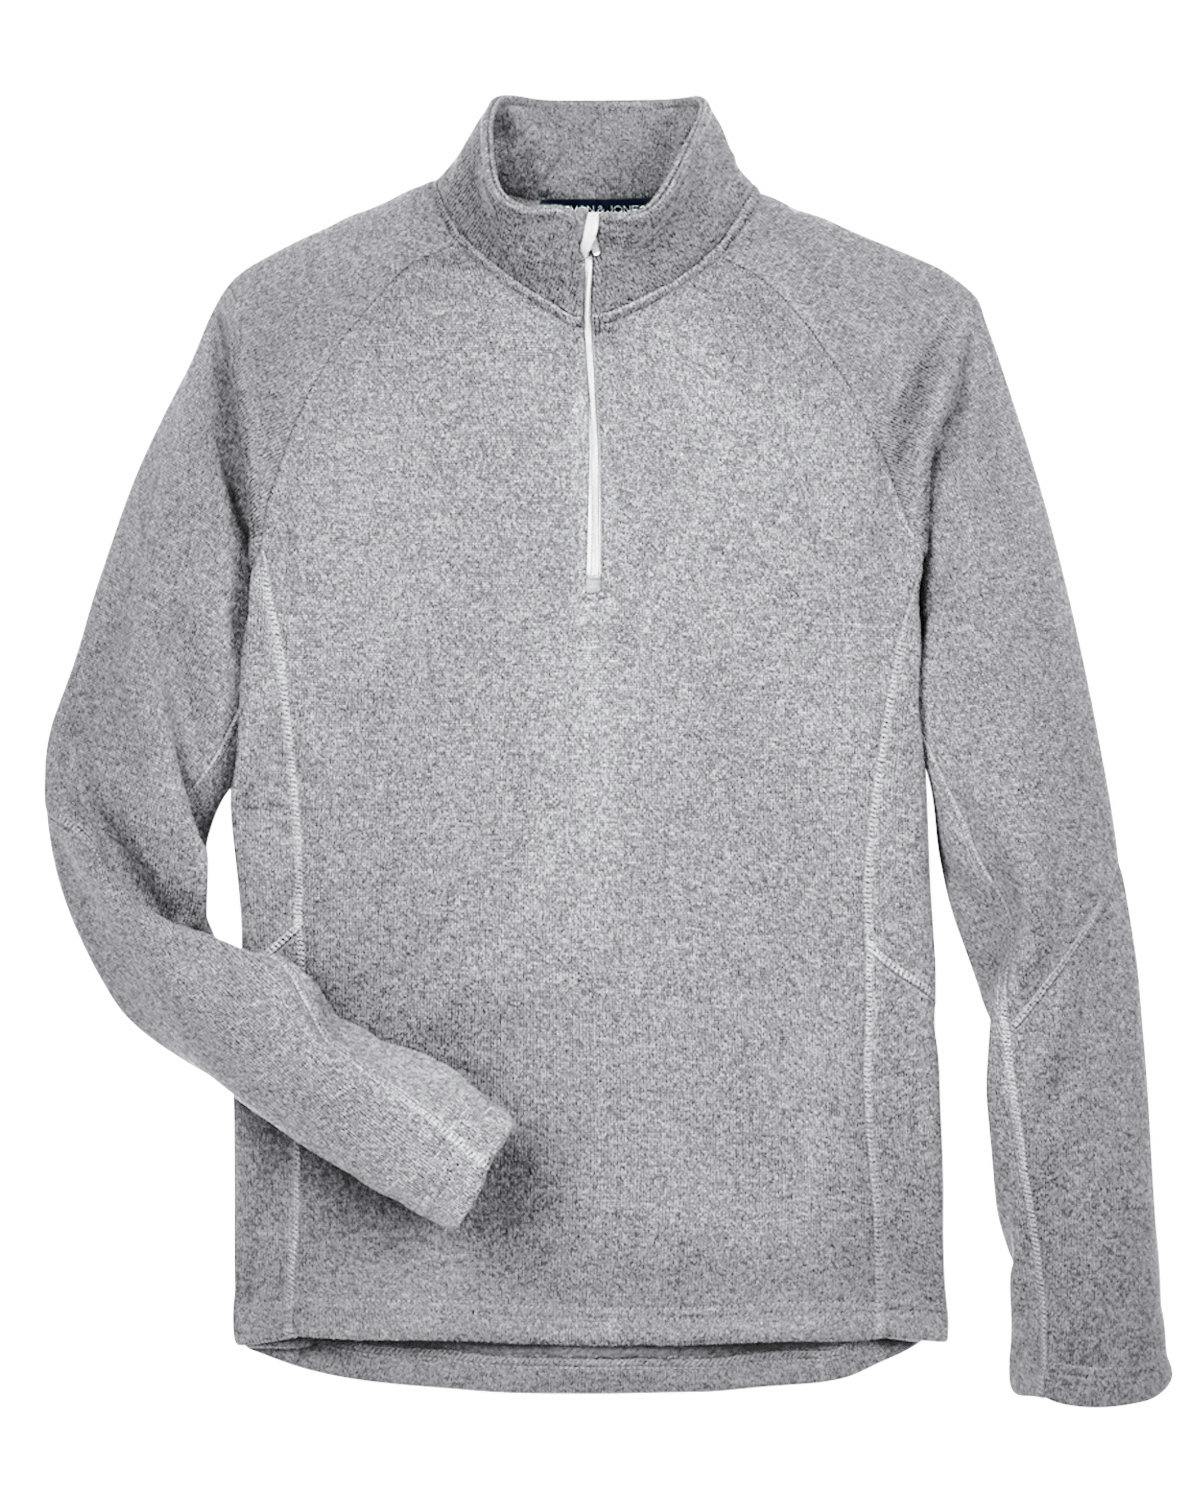 Image for Adult Bristol Sweater Fleece Quarter-Zip